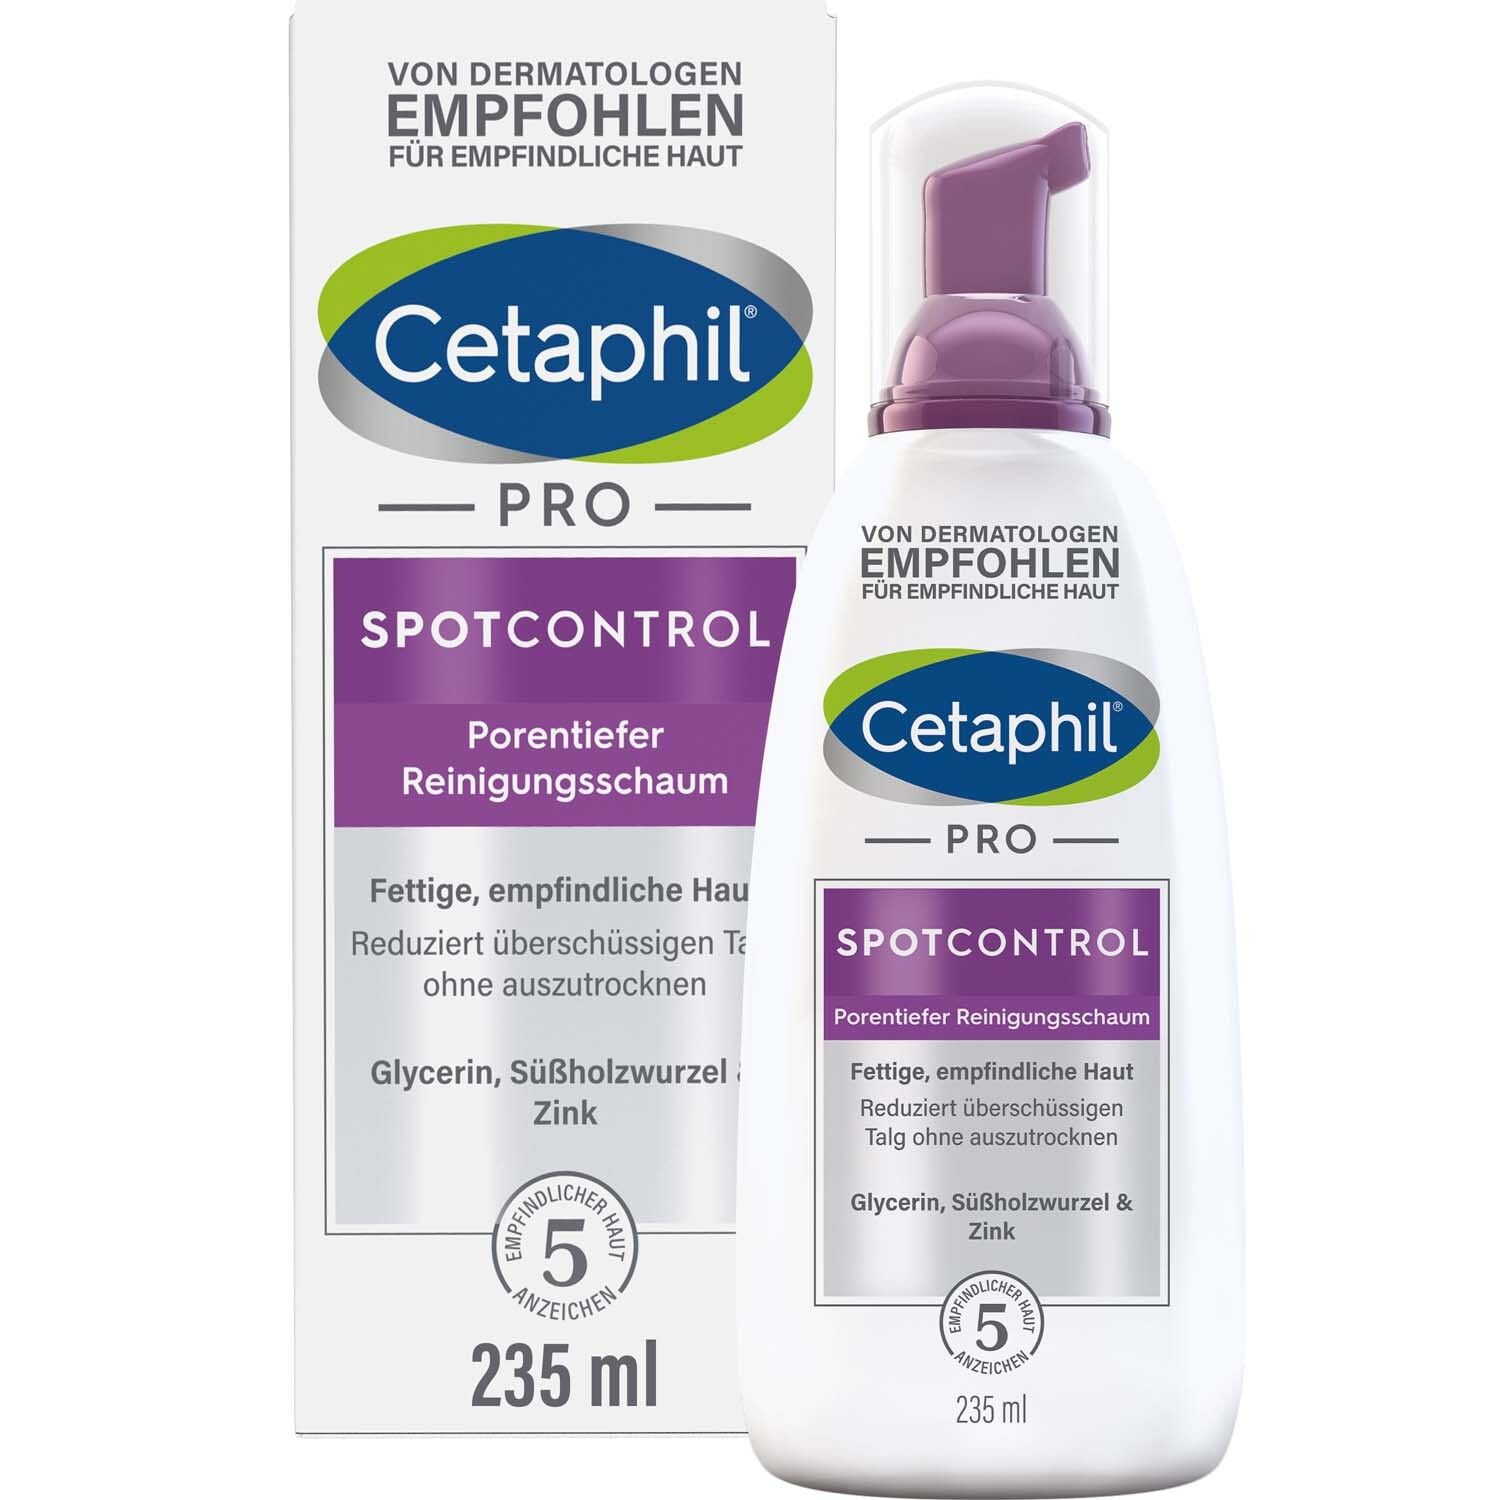 Cetaphil® PRO SpotControl Porentiefer Reinigungsschaum